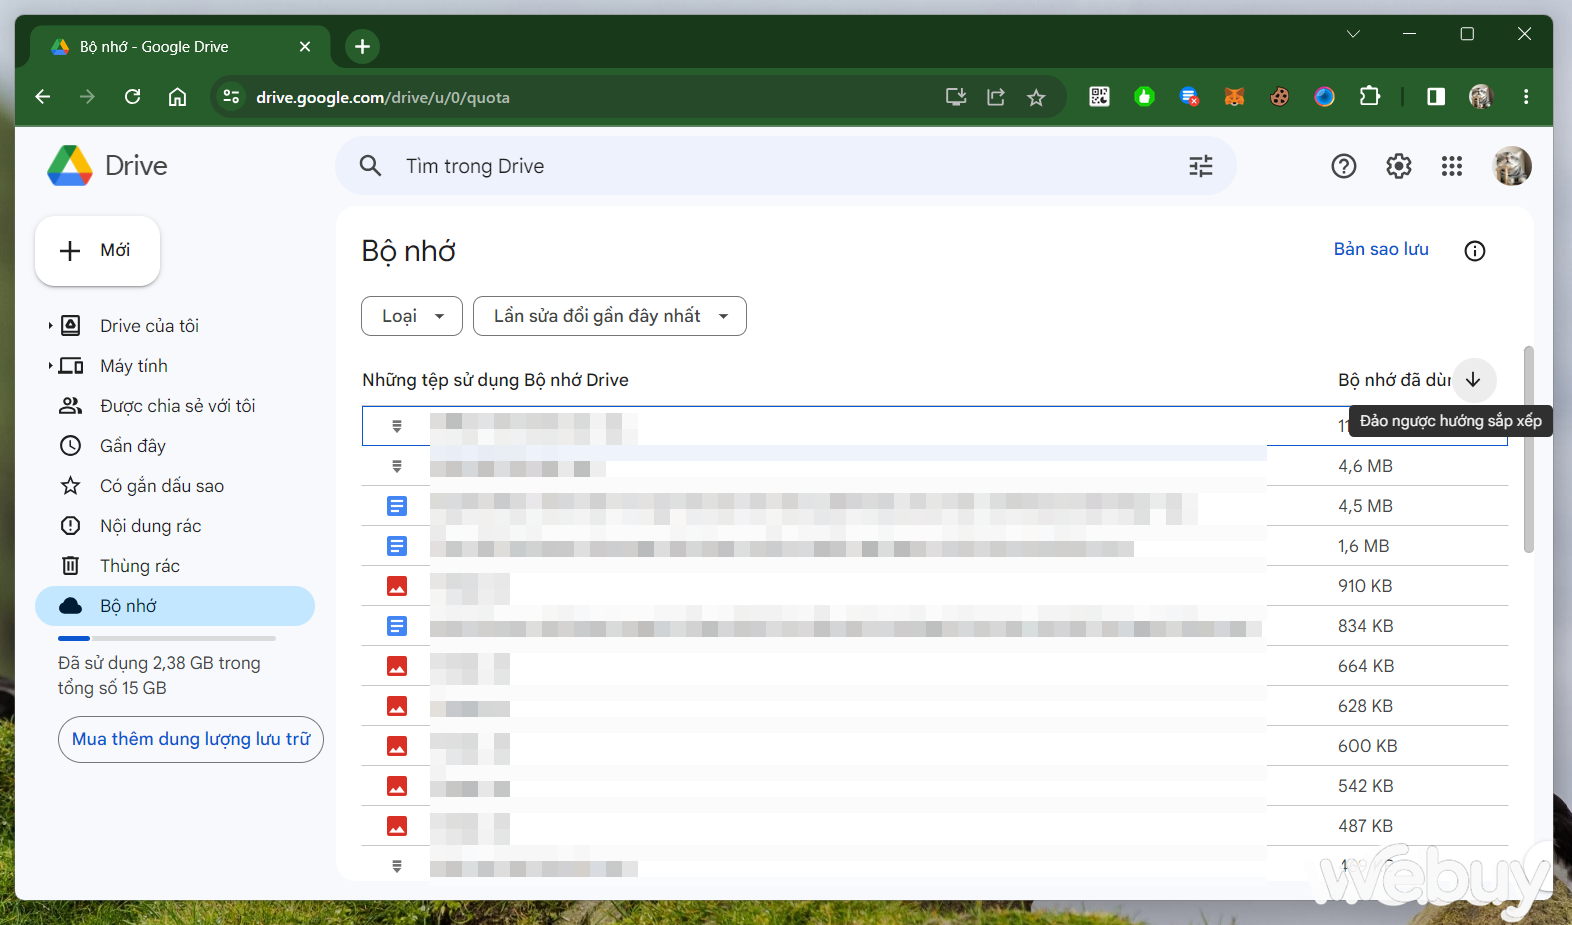 Các mẹo dọn dẹp giúp giải phóng không gian lưu trữ cho Google Drive và Gmail - Ảnh 2.